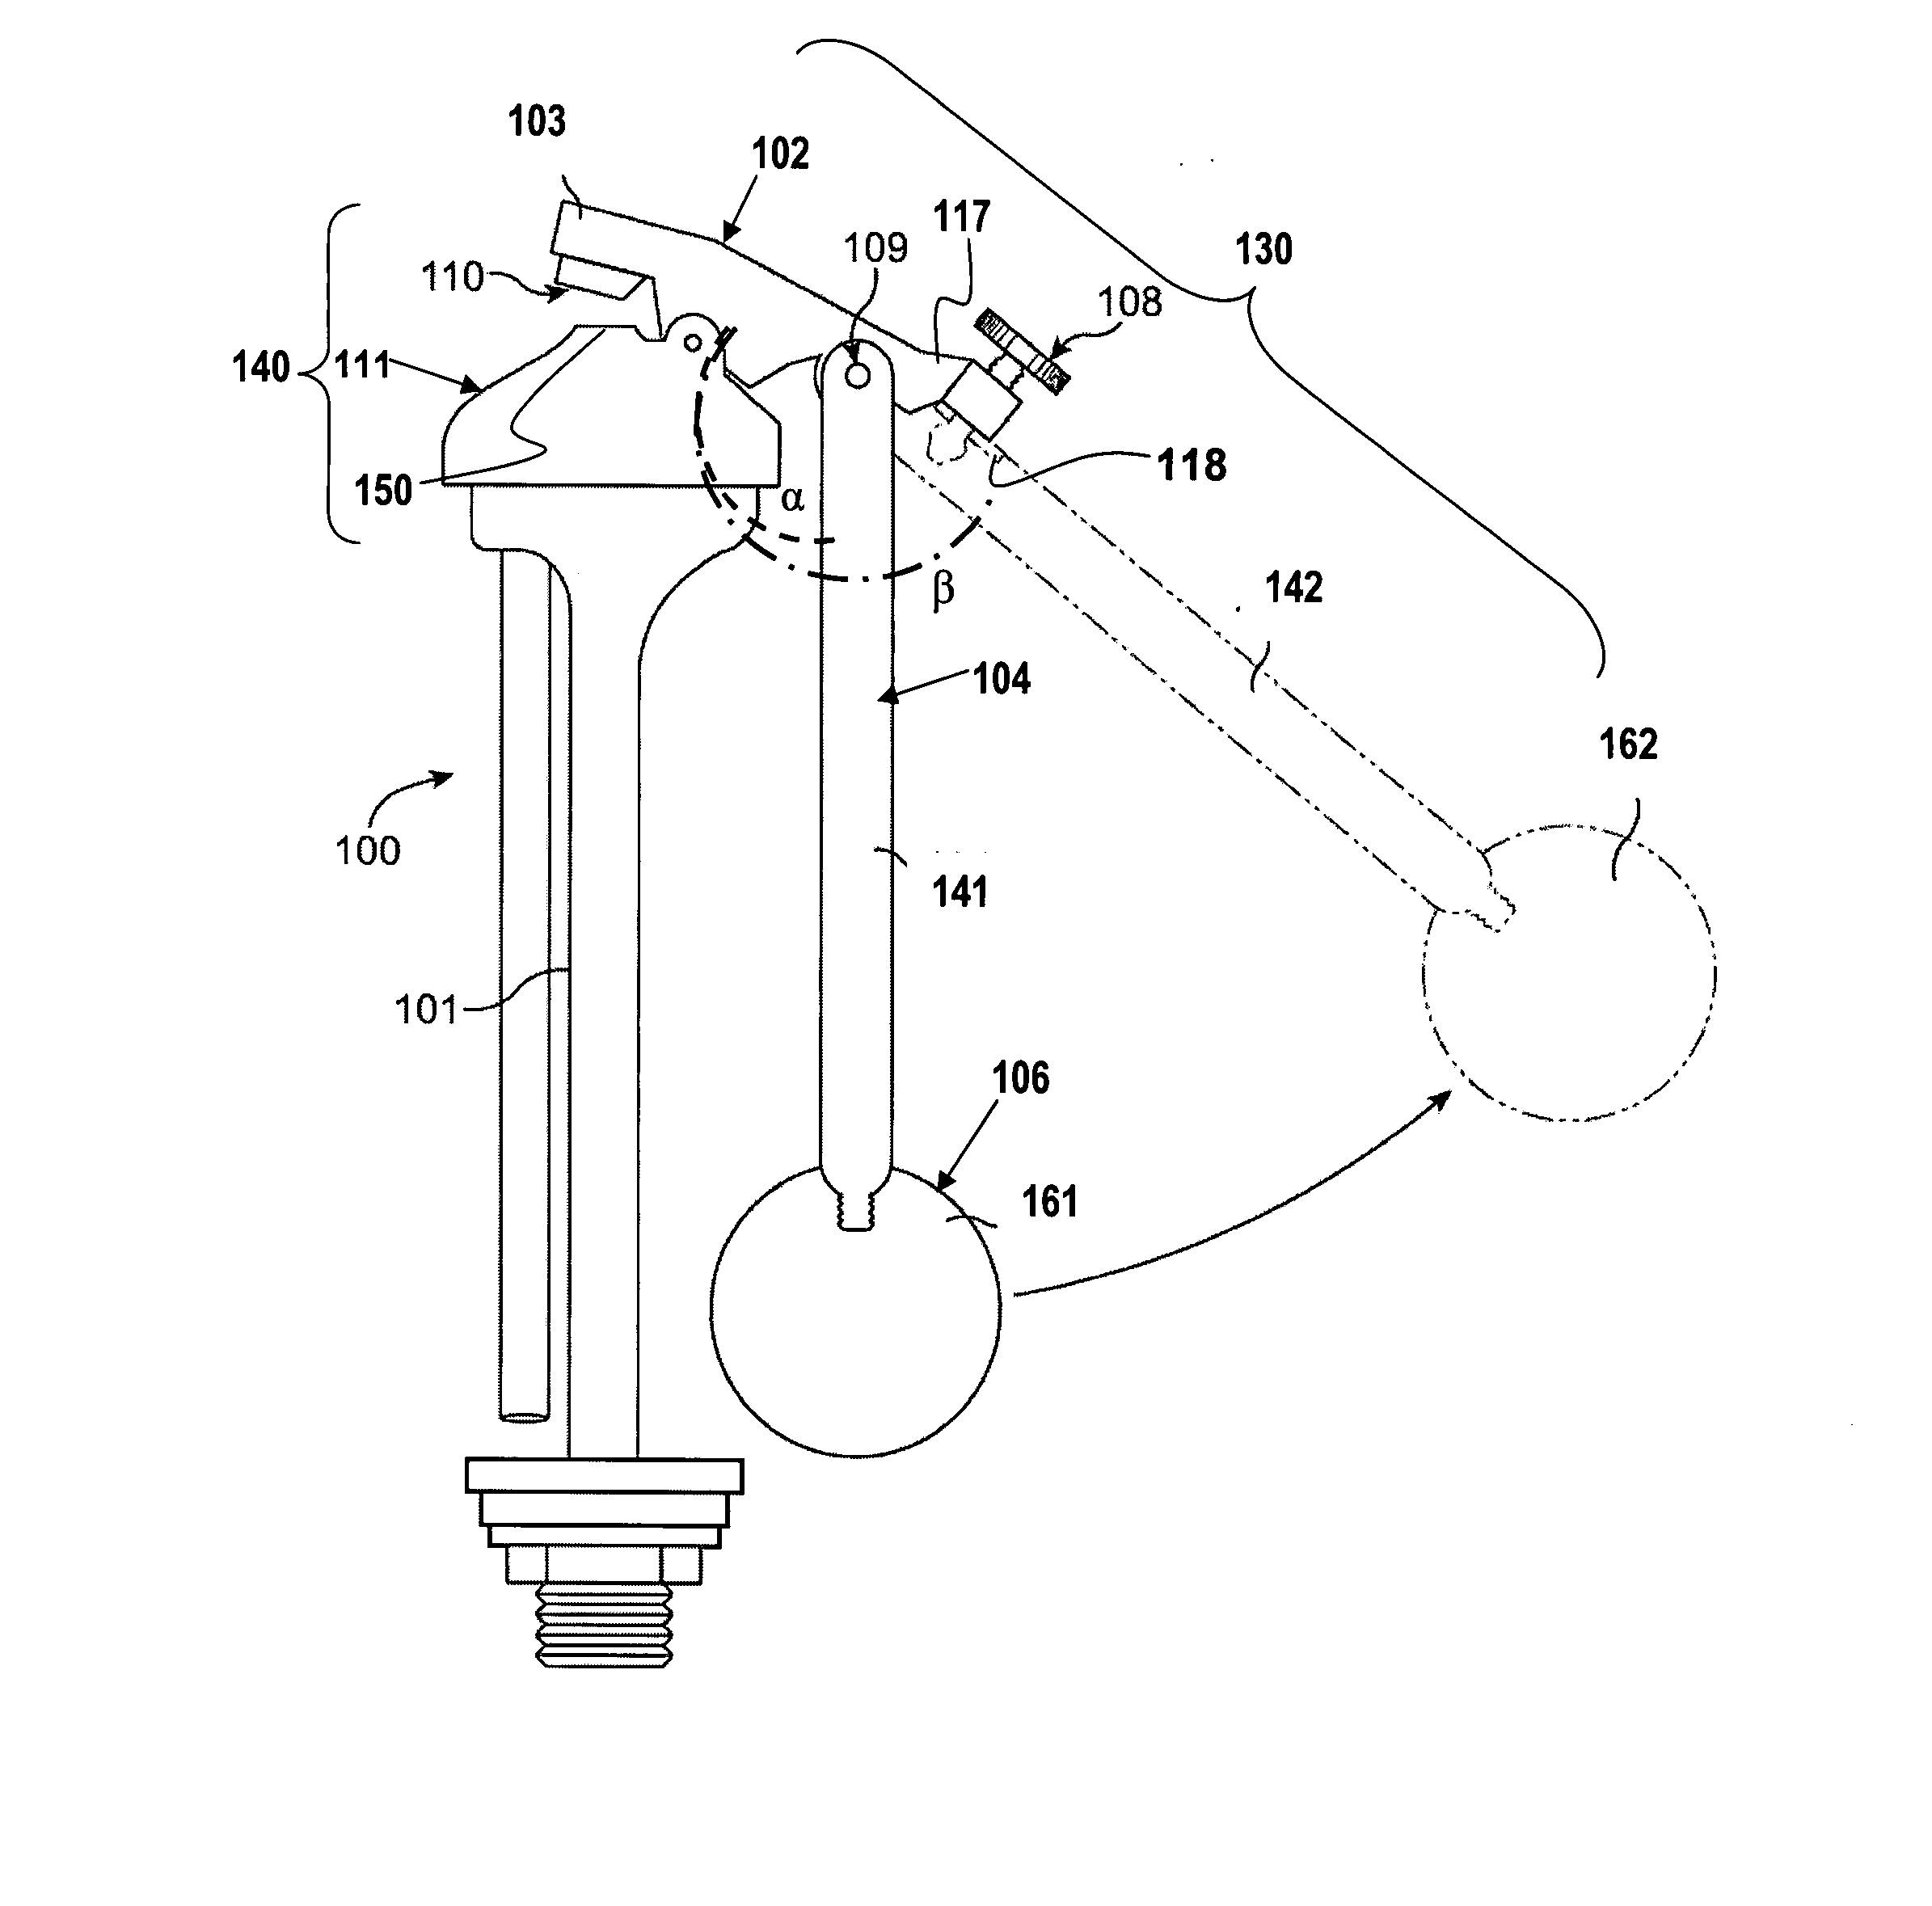 Retractable float for a ballcock valve